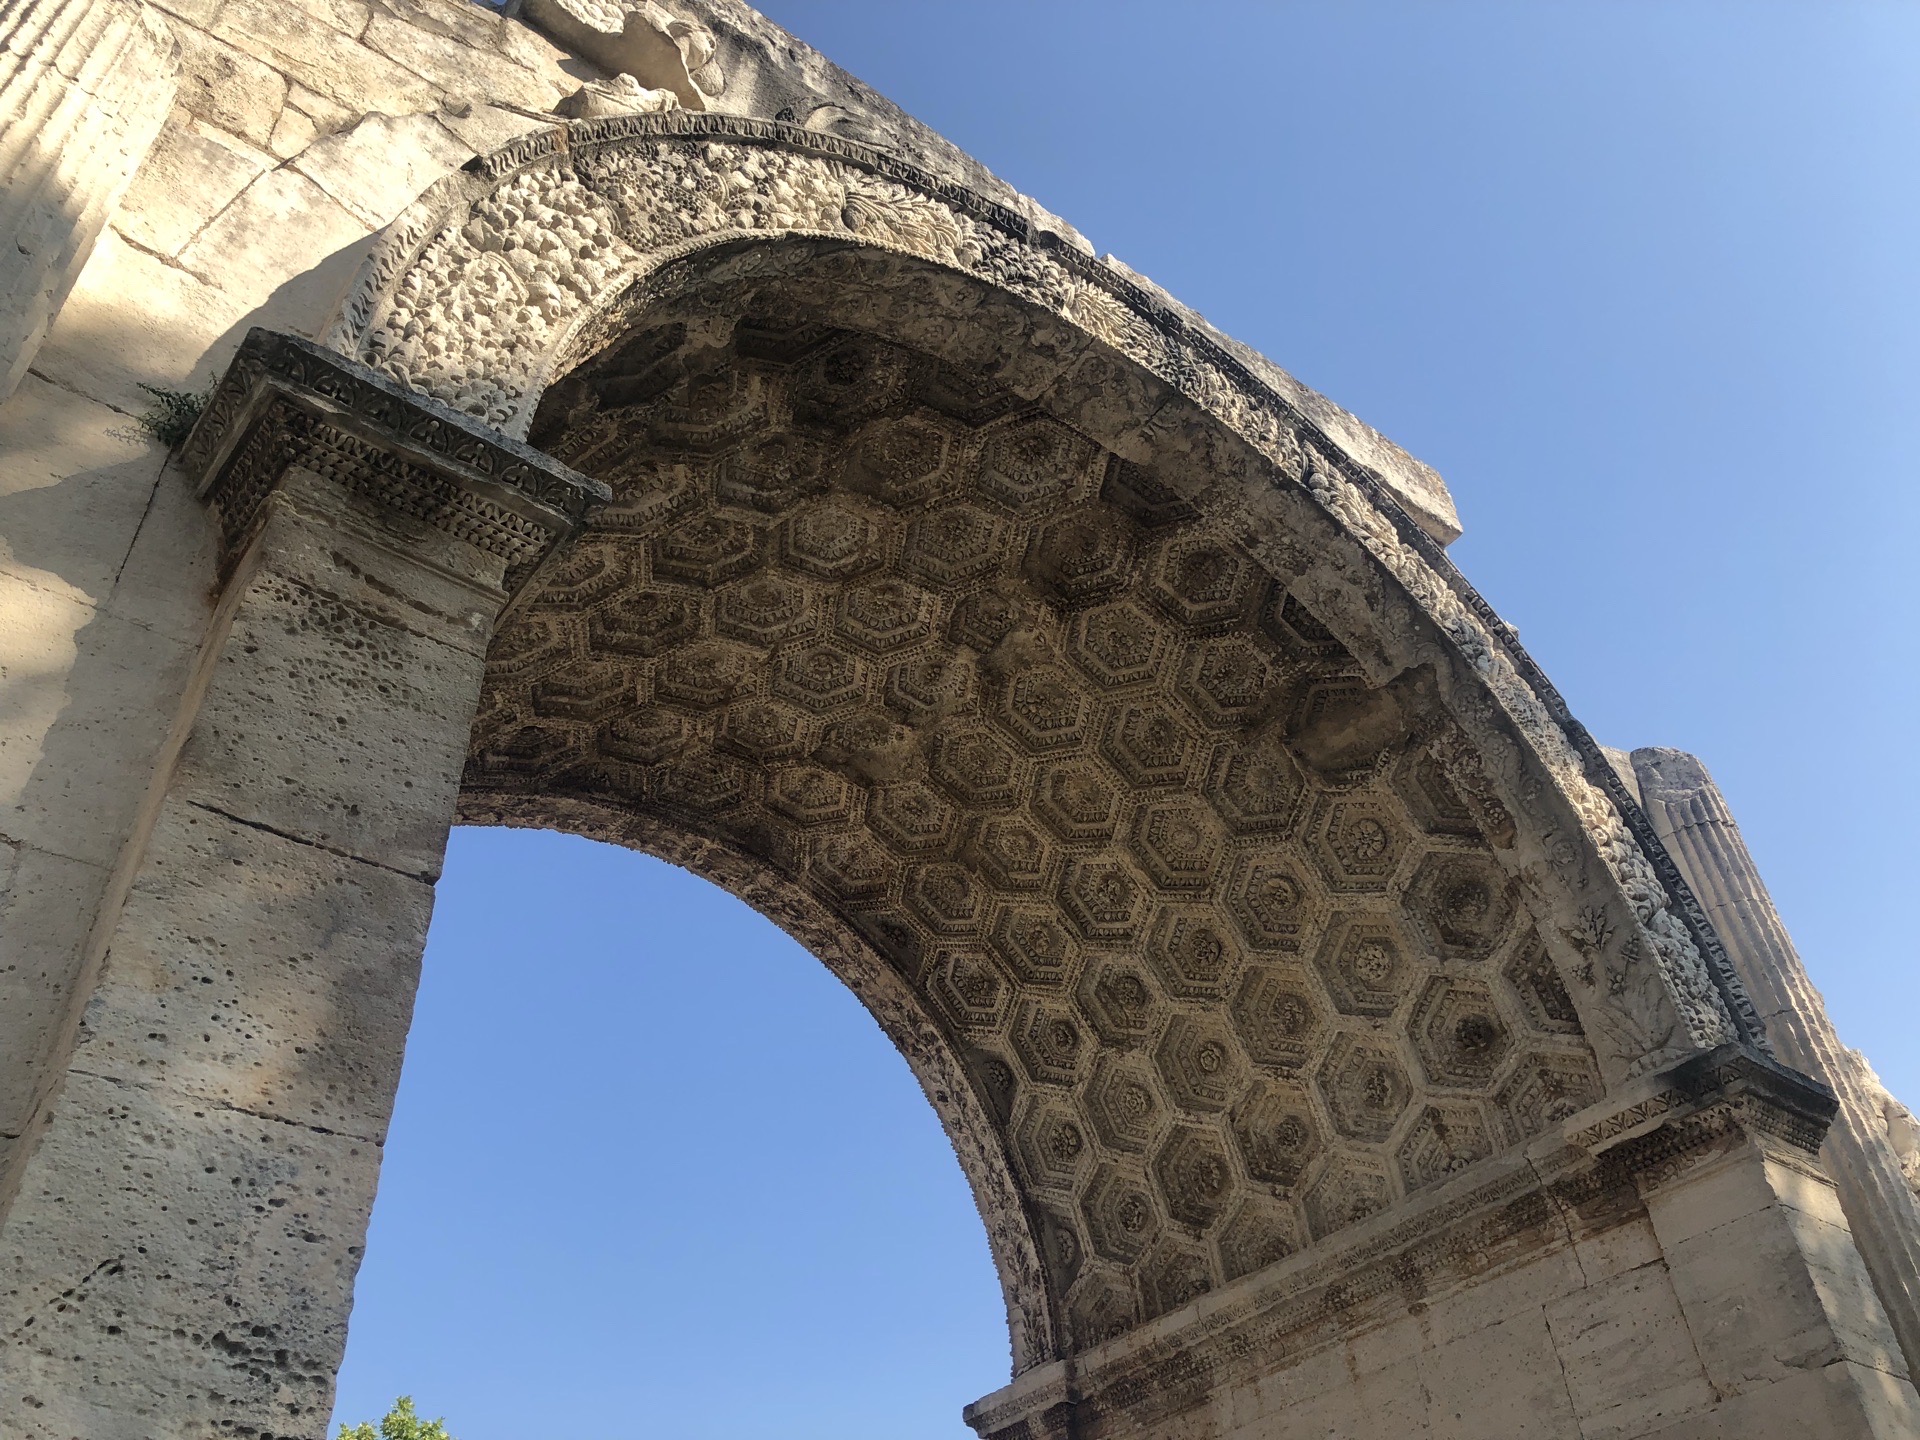 来到南法圣雷米，附近有一个古罗马遗址，看着还挺壮观的。保存也很不错，建筑非常有质感，上面的雕塑还能依